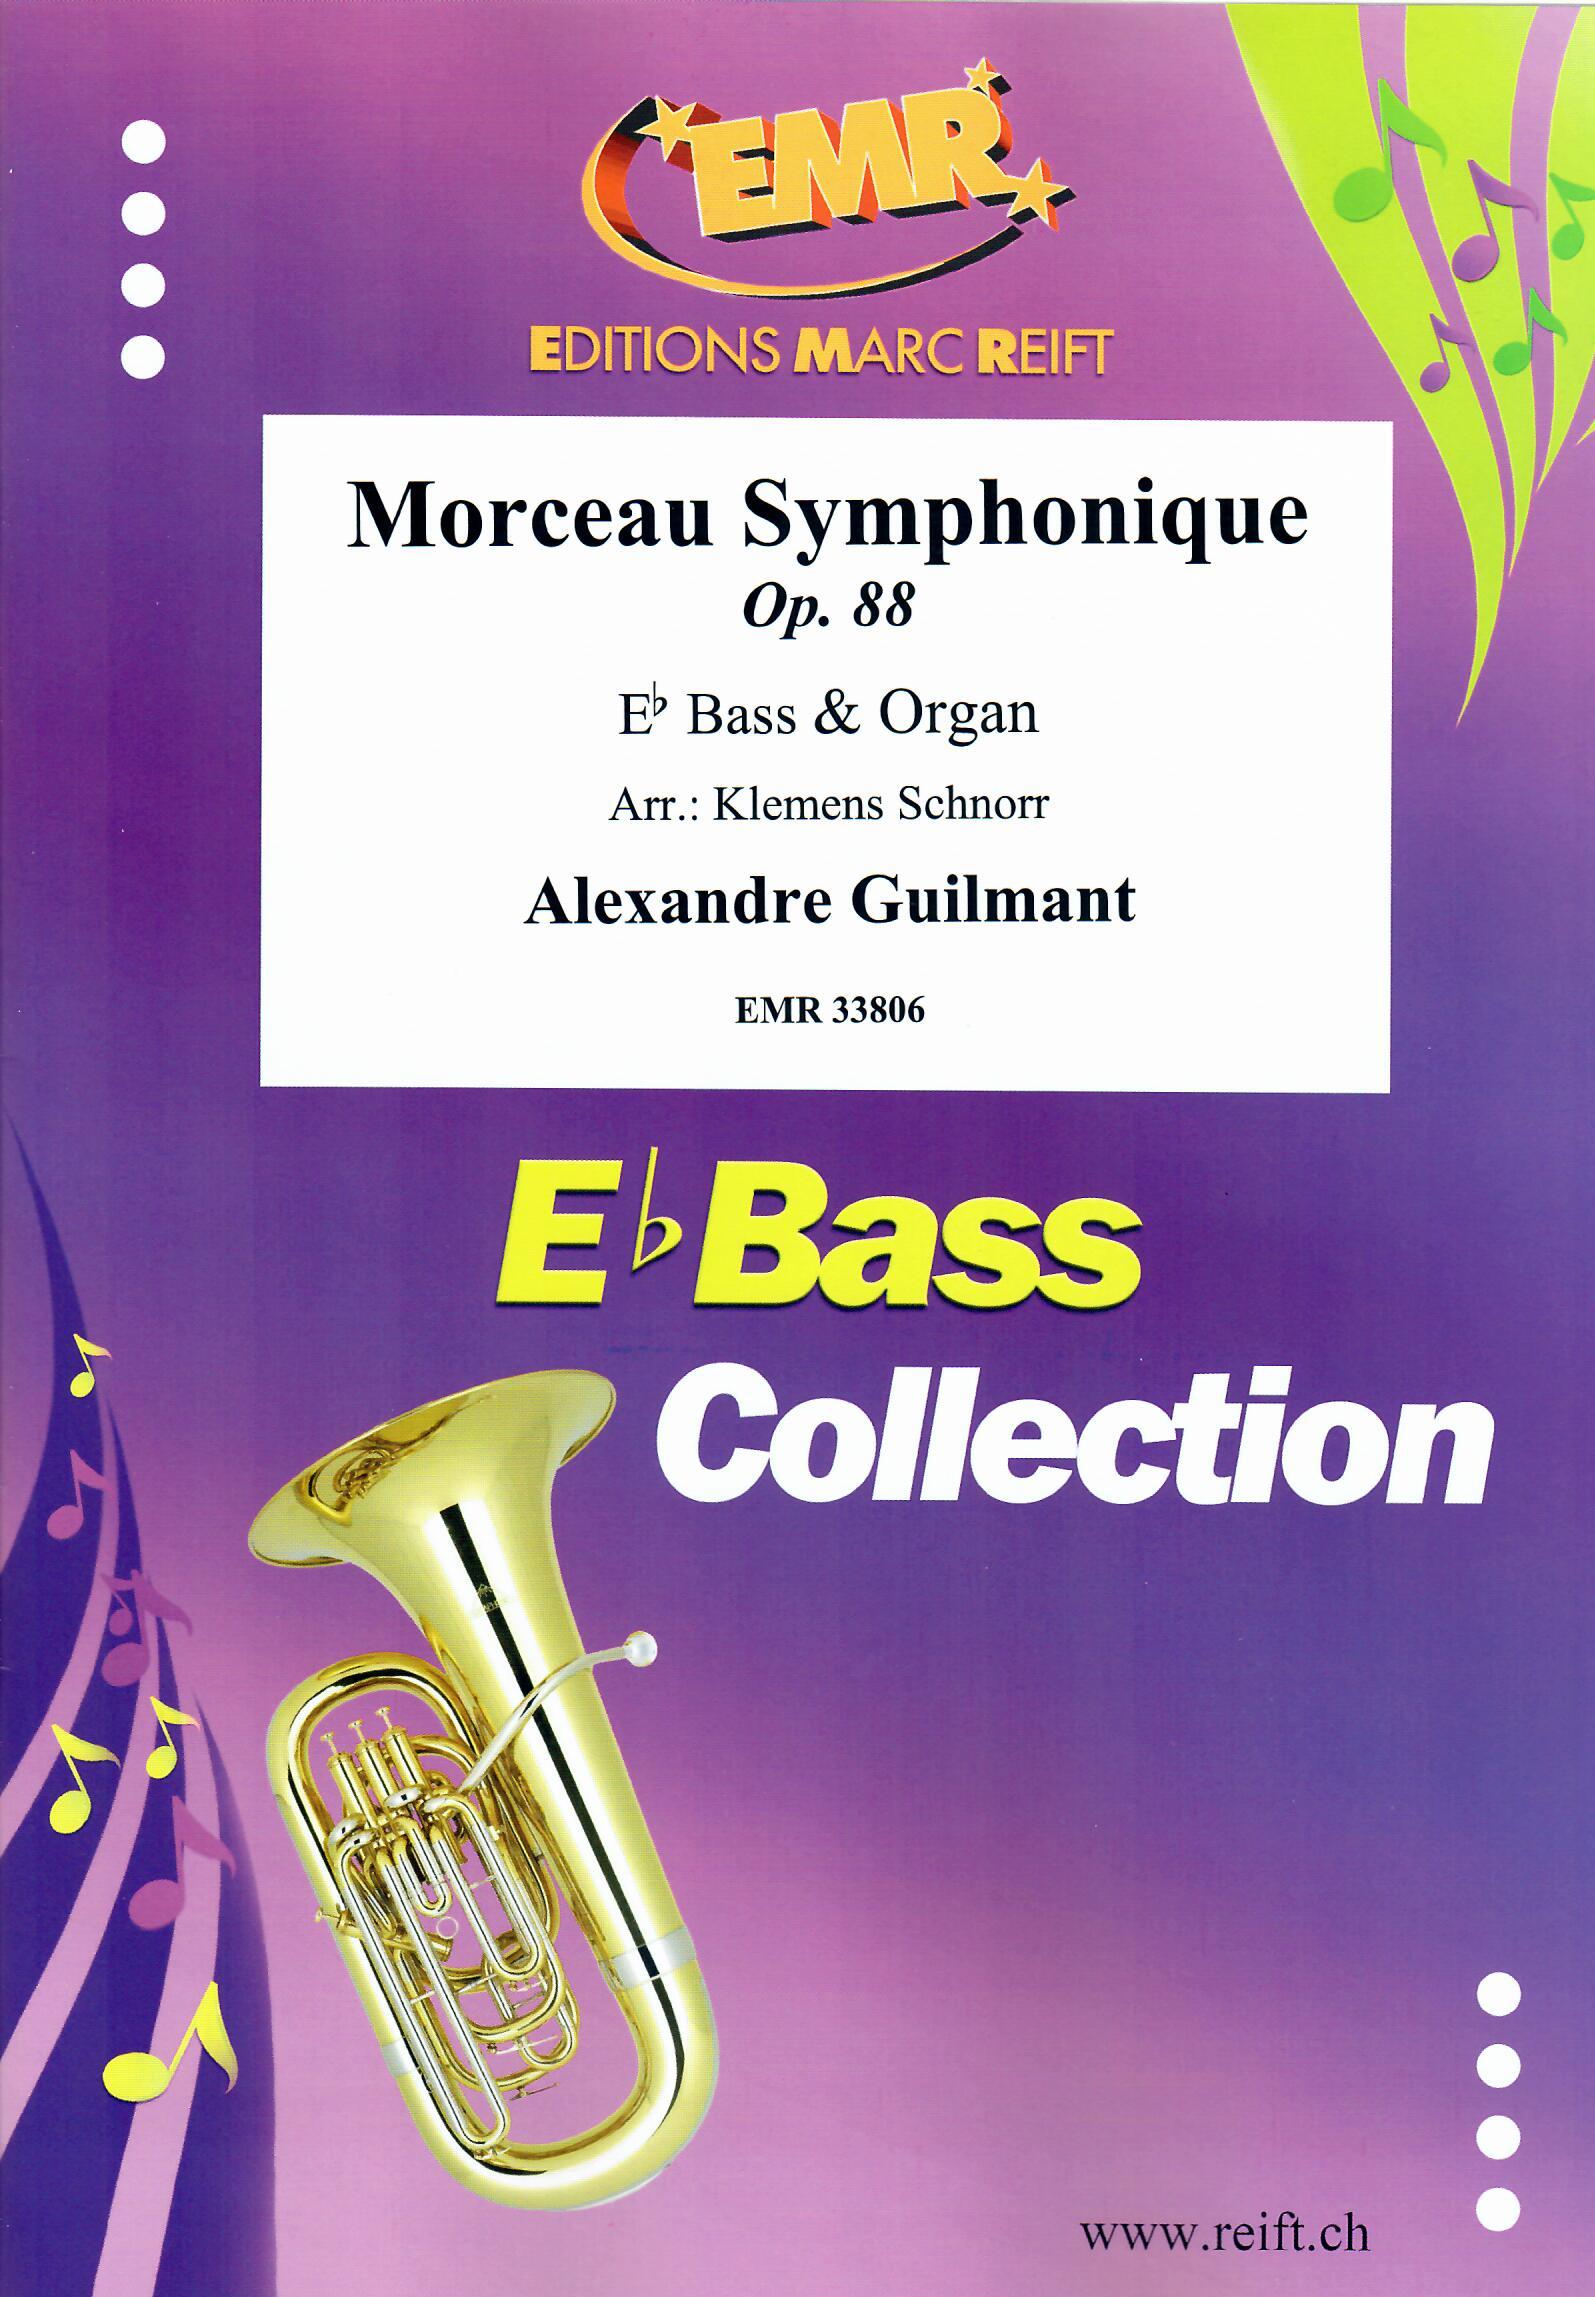 MORCEAU SYMPHONIQUE, SOLOS - E♭. Bass